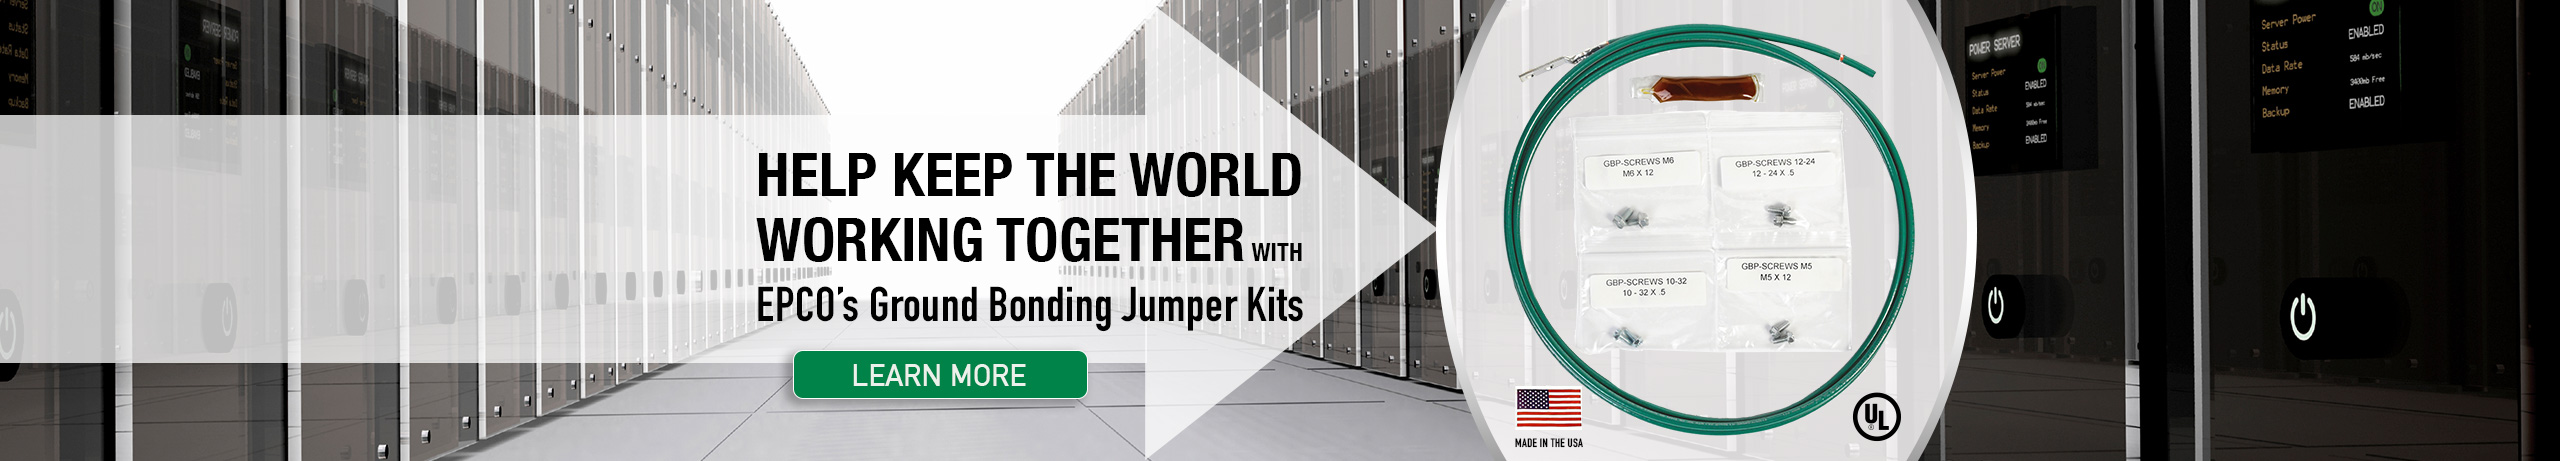 Ground Bonding Jumper Kits for Data Centers